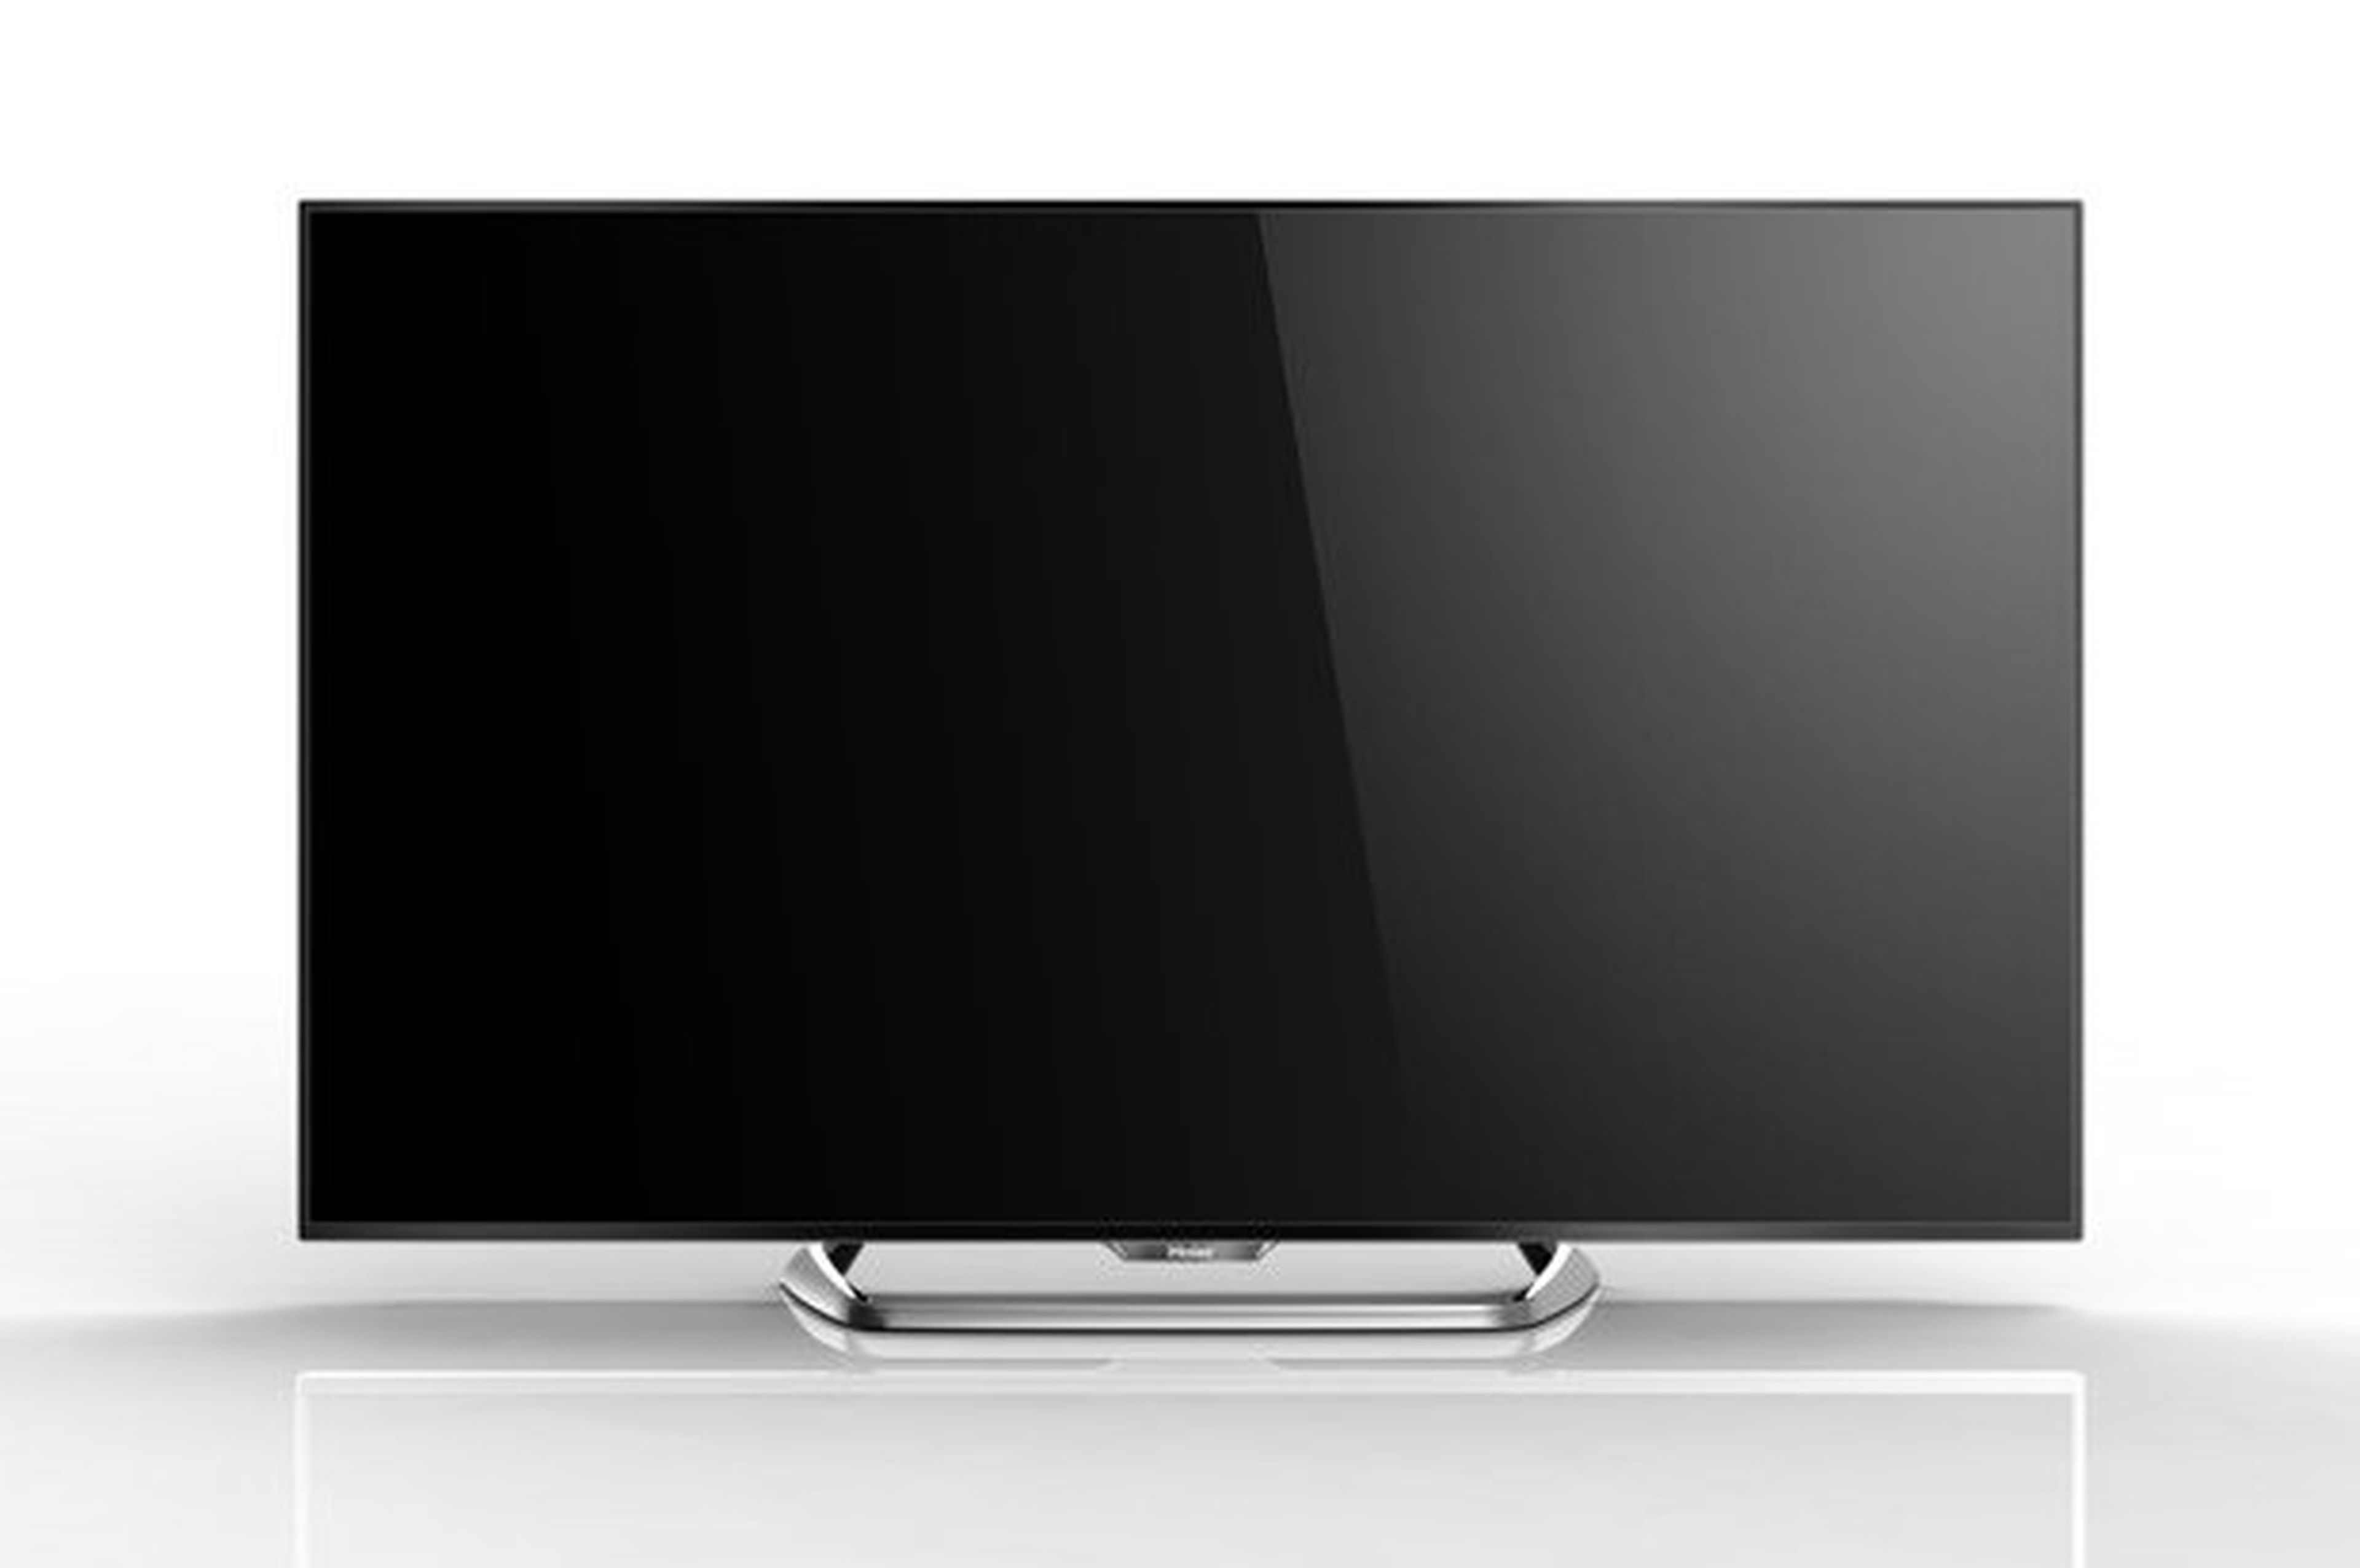 Haier anuncia 25 nuevos televisores SLIM LED en IFA 2013